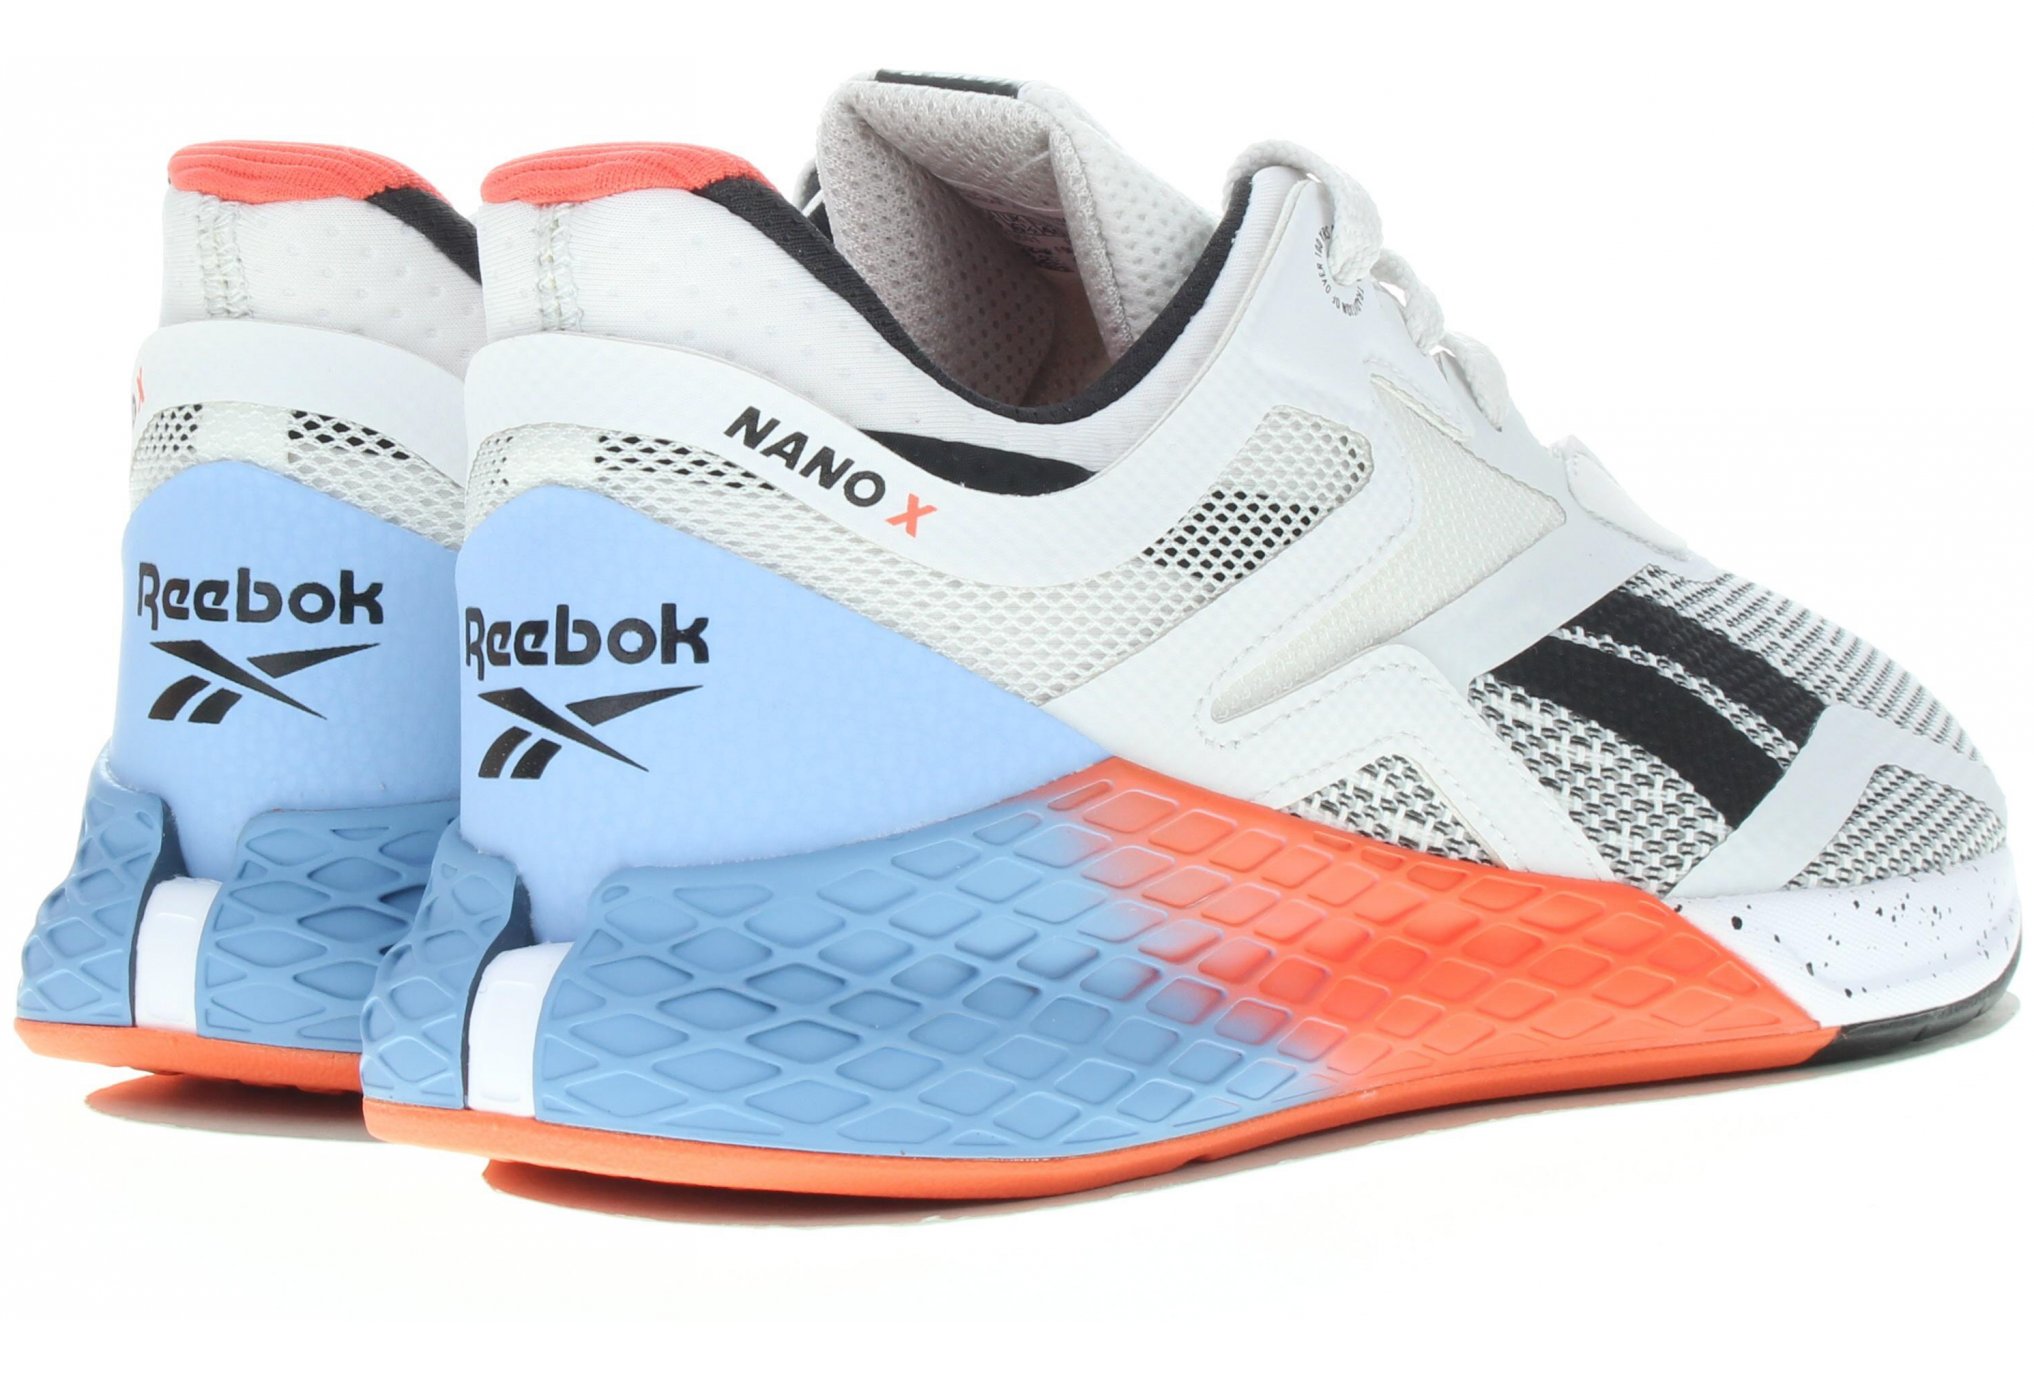 La nouvelle chaussure spéciale Crossfit de Reebok : NANO X - U Run